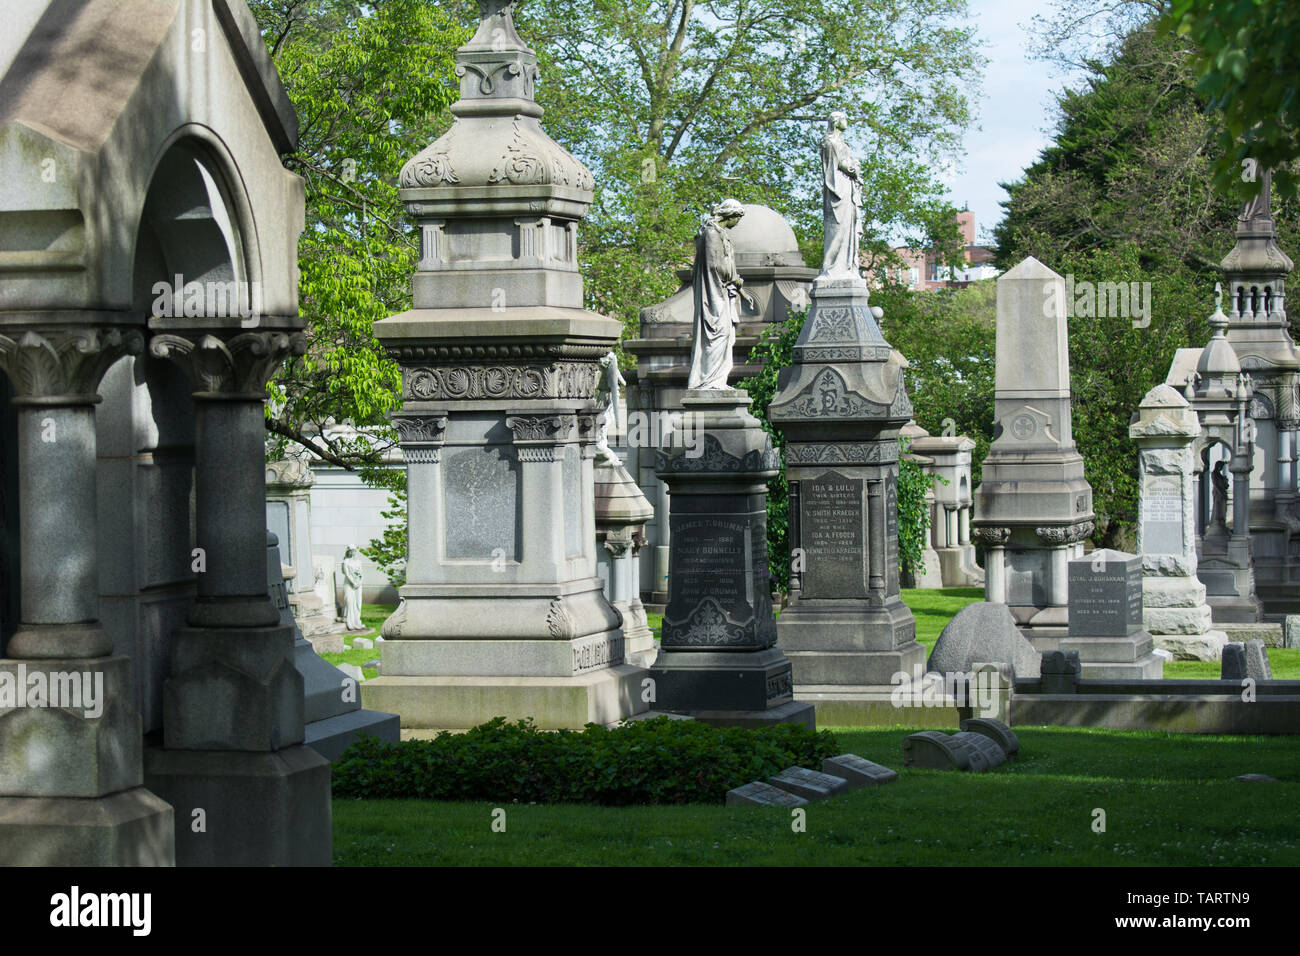 Le cimetière historique de Vert-bois est situé dans le quartier de Park Slope, Brooklyn, New York, USA. Le cimetière est un National Historic Landmark. Banque D'Images